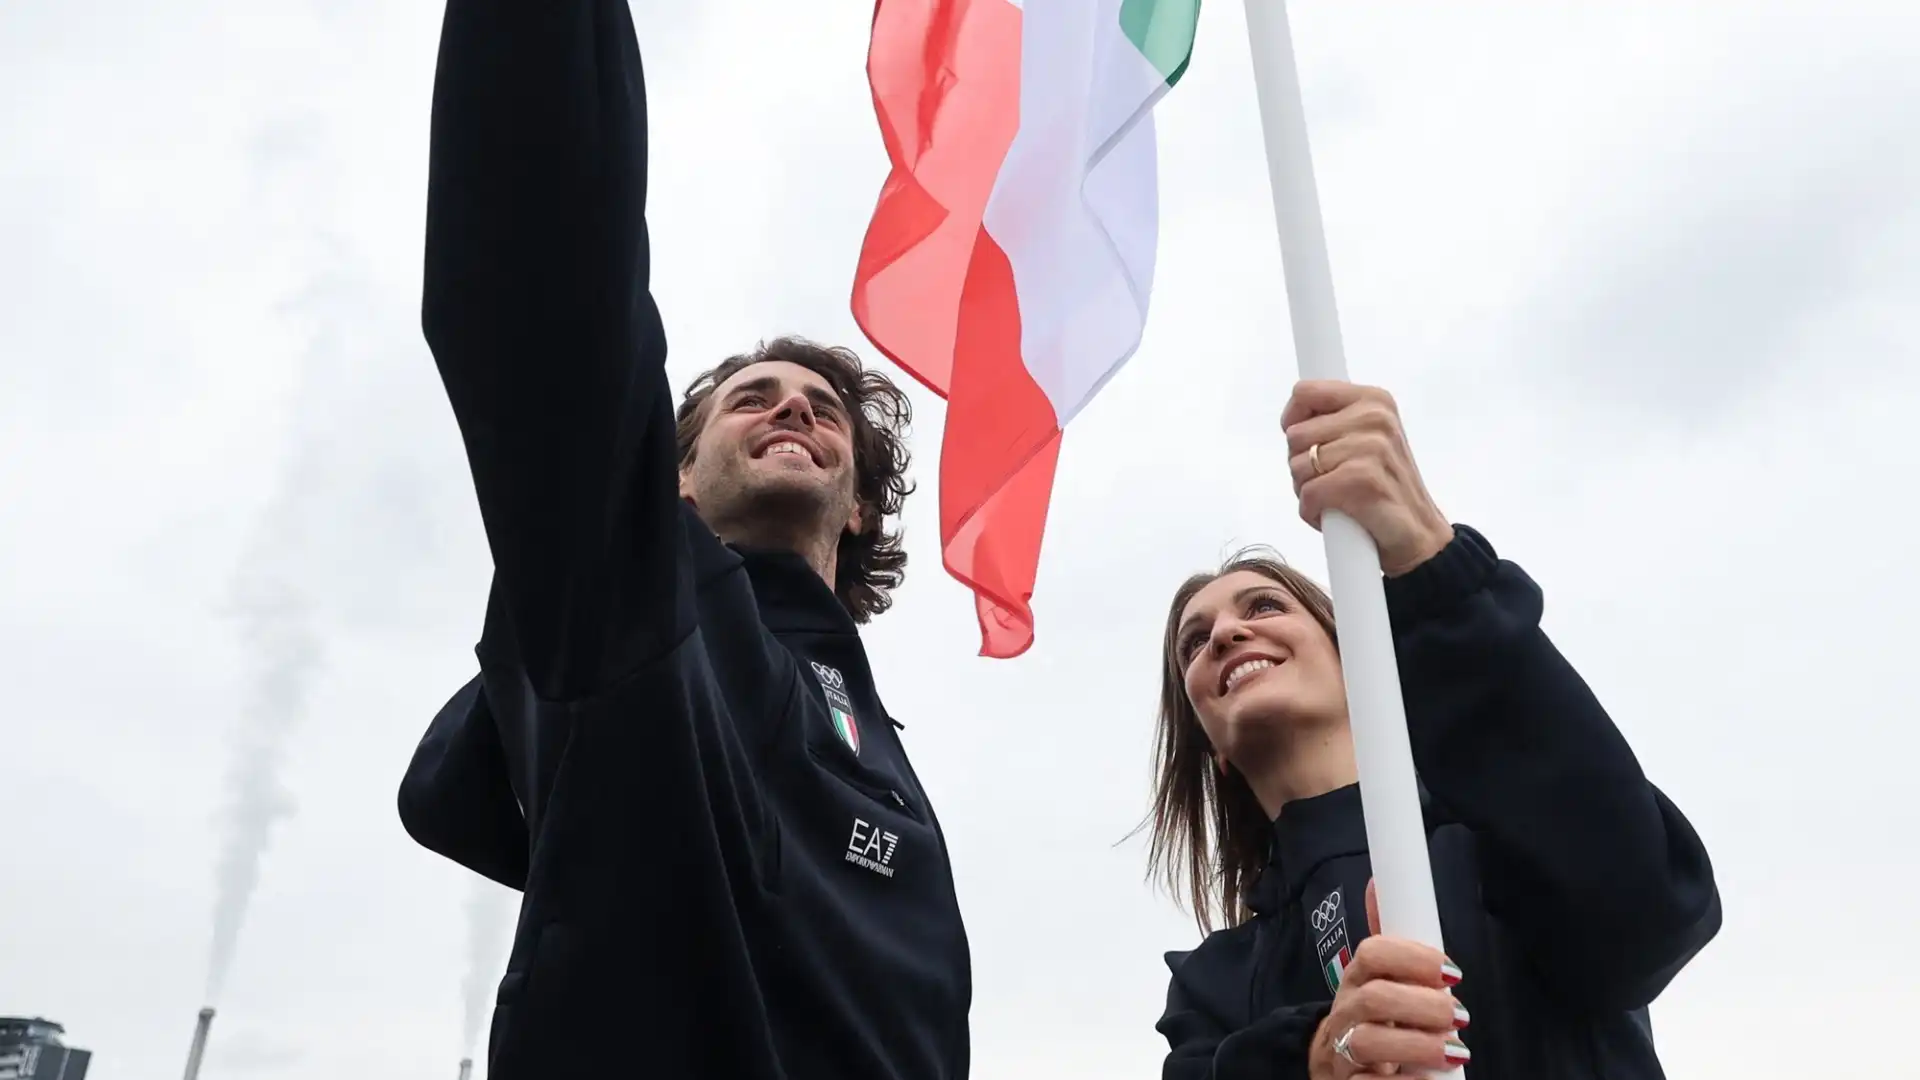 Olimpiadi, disavventura per Gianmarco Tamberi durate la sfilata